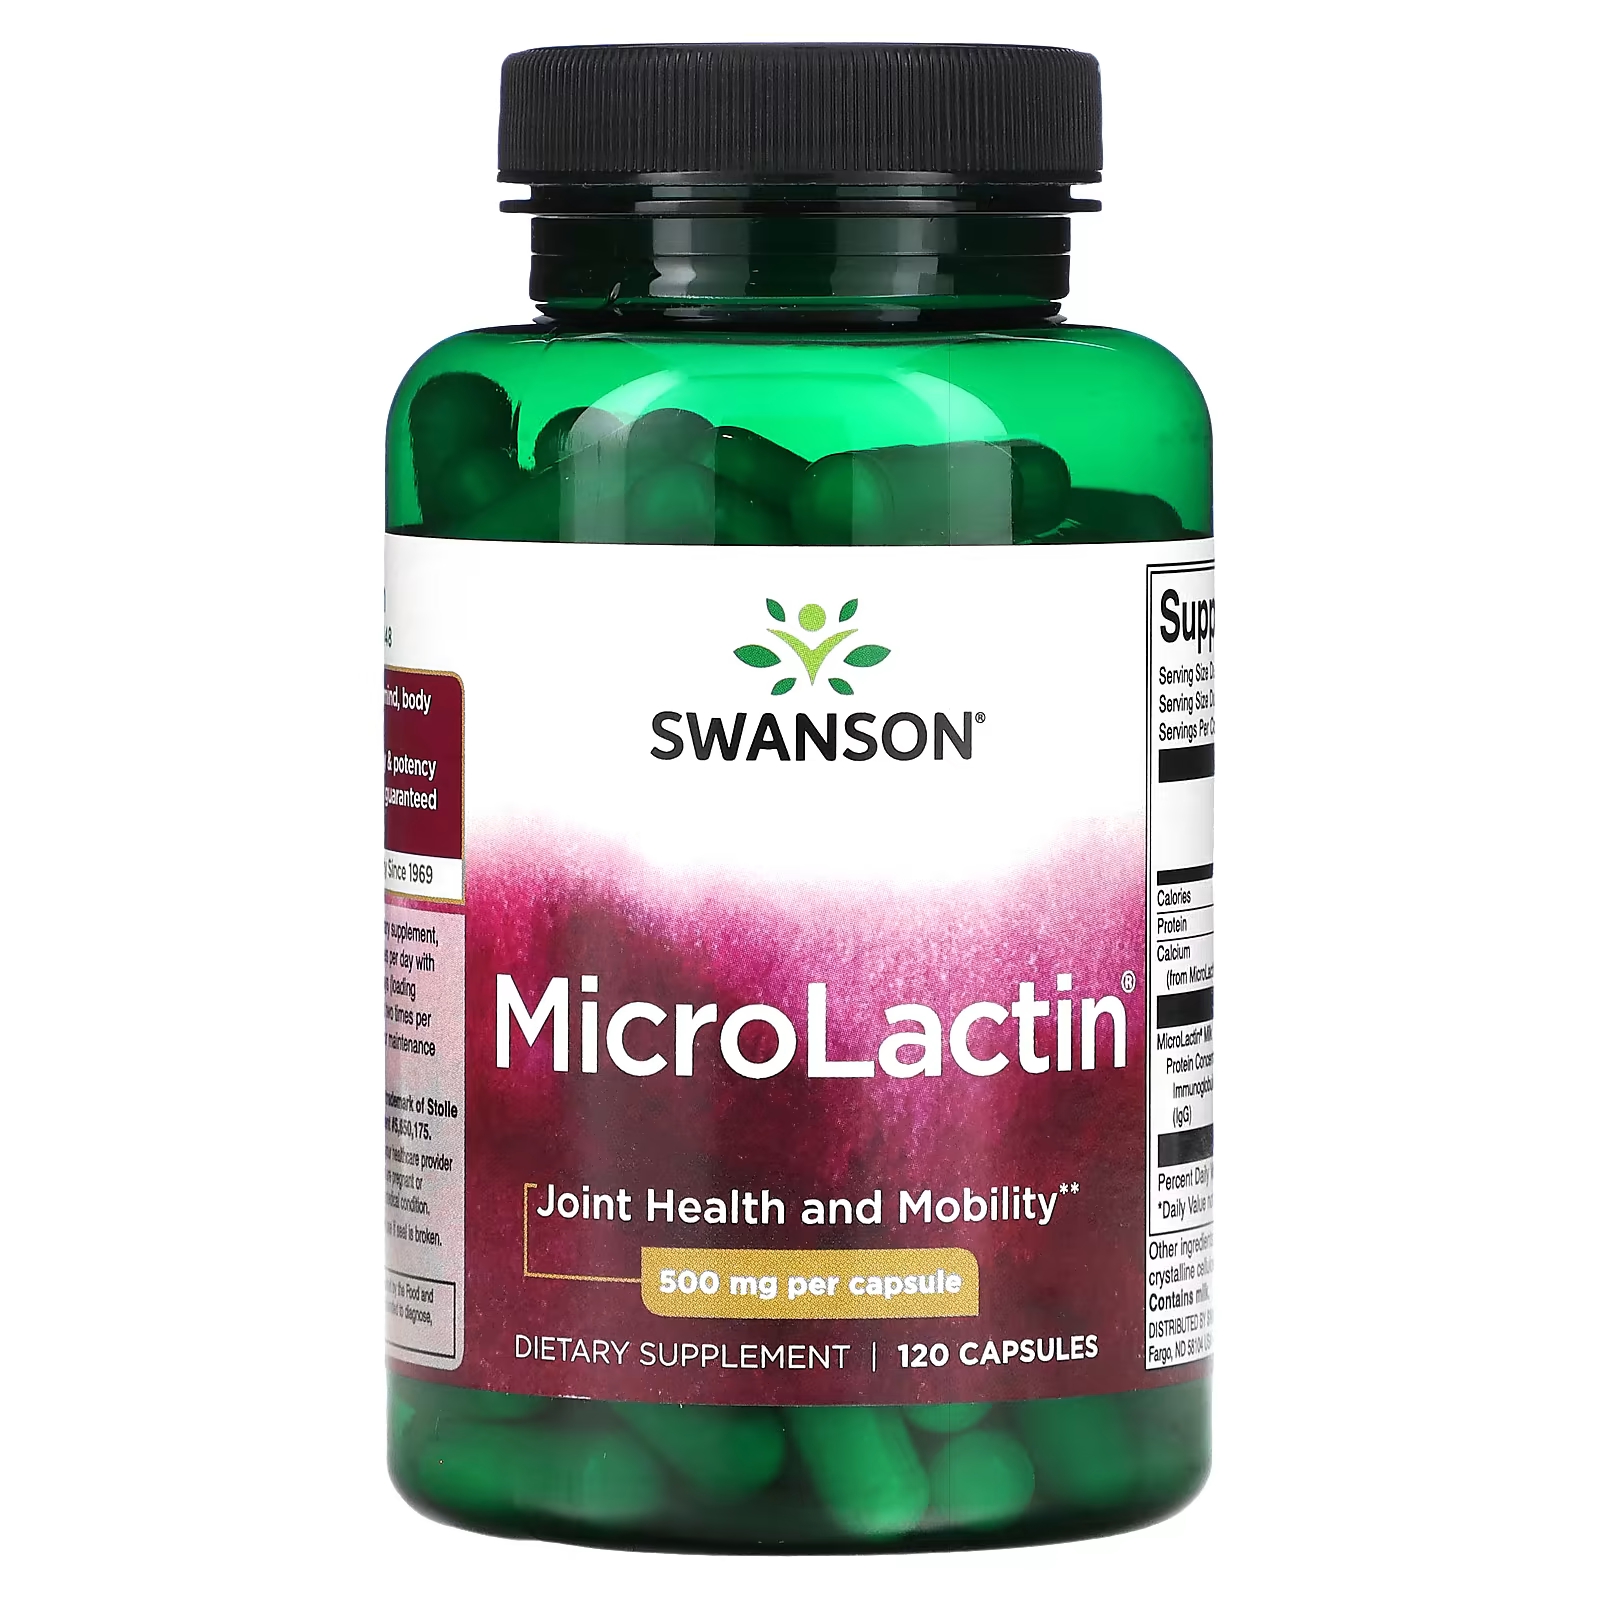 Пищевая добавка Swanson MicroLactin здоровье и подвижность суставов, 120 капсул пищевая добавка terry naturally здоровье и подвижность суставов 60 капсул